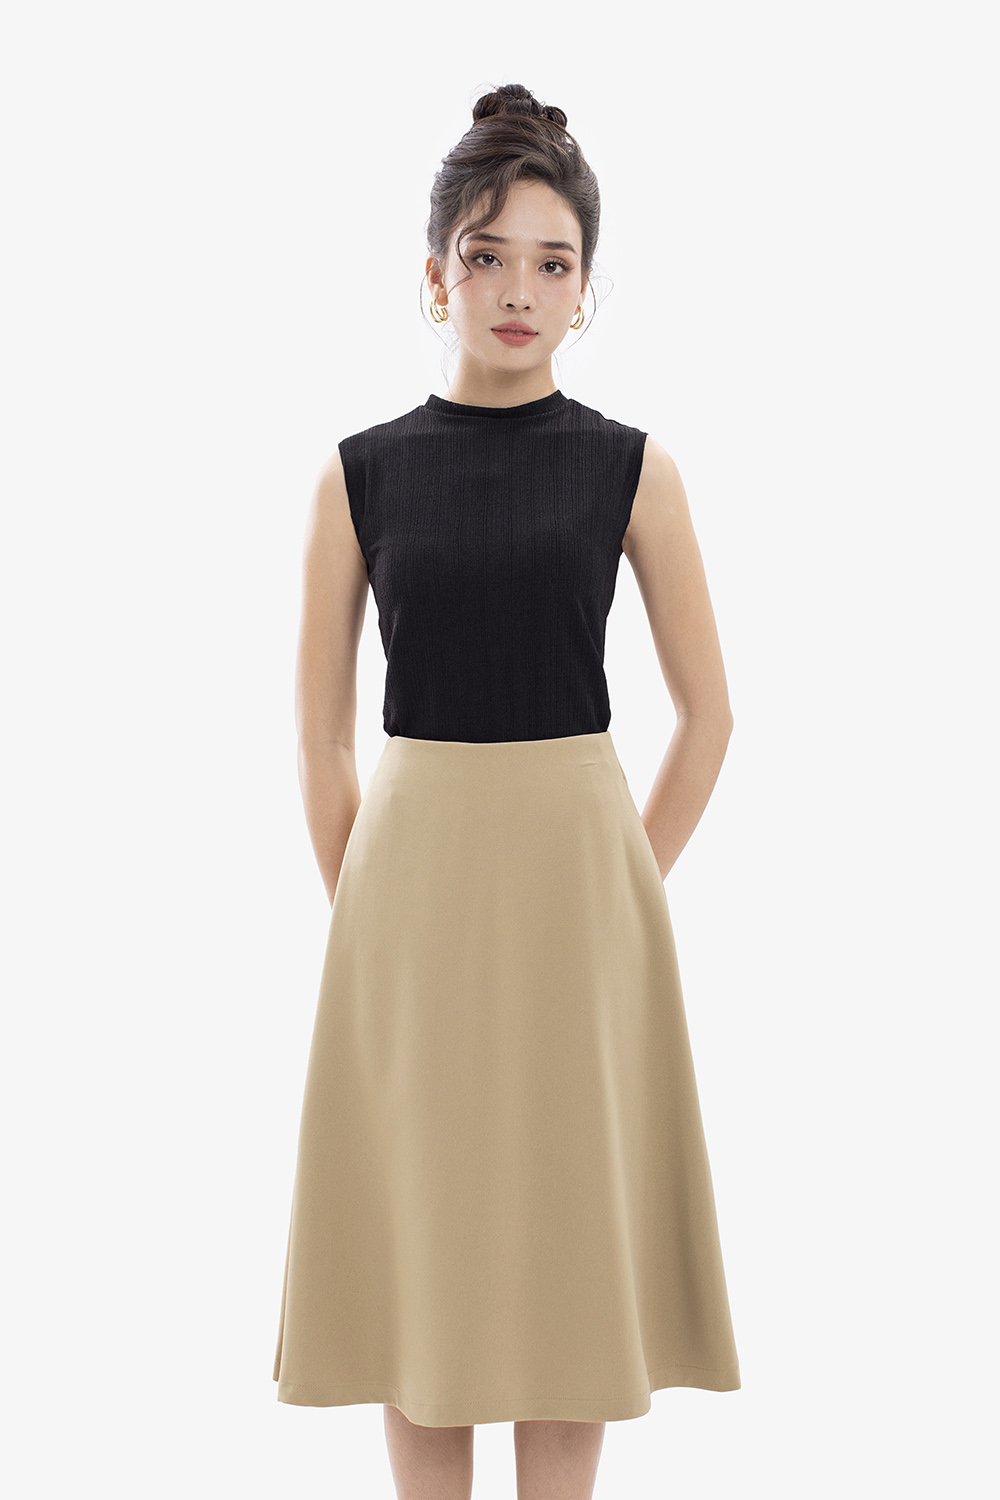 CV2056 - Chân váy xoè có đai eo màu đen - Thời trang công sở nữ - Bazzi.vn